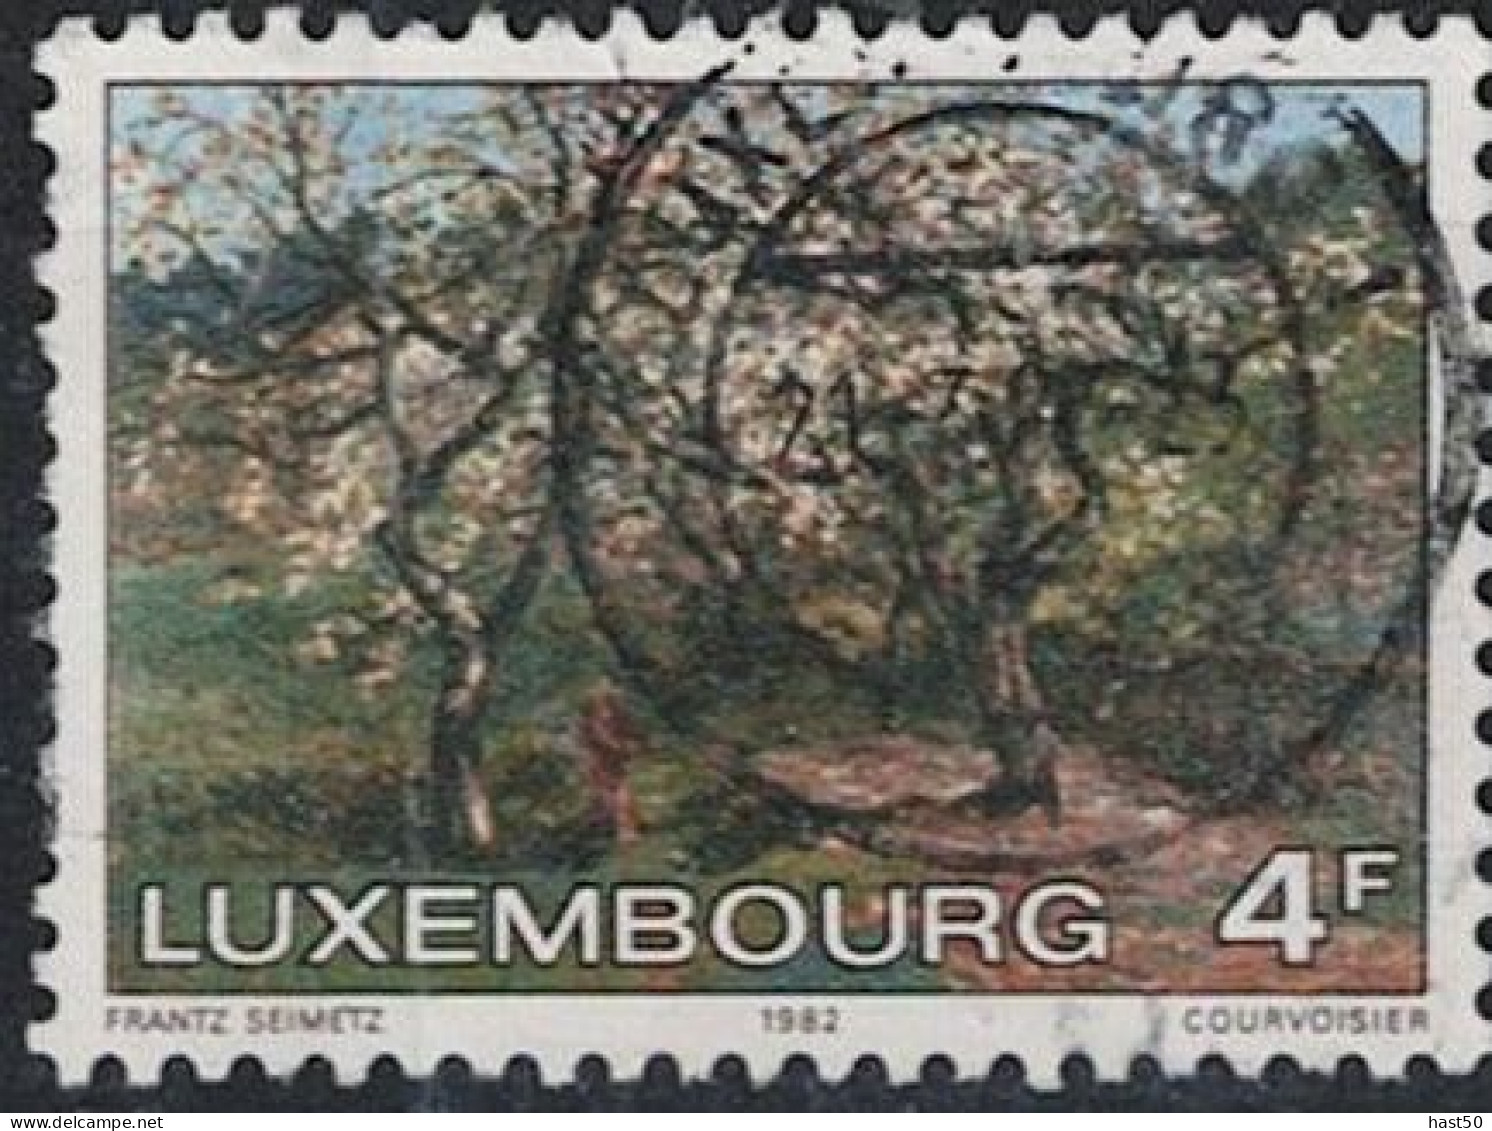 Luxemburg -Blühender Apfelbaum (Frühling); Gemälde Von Frantz Seimetz (MiNr: 1046) 1982 - Gest Used Obl - Used Stamps